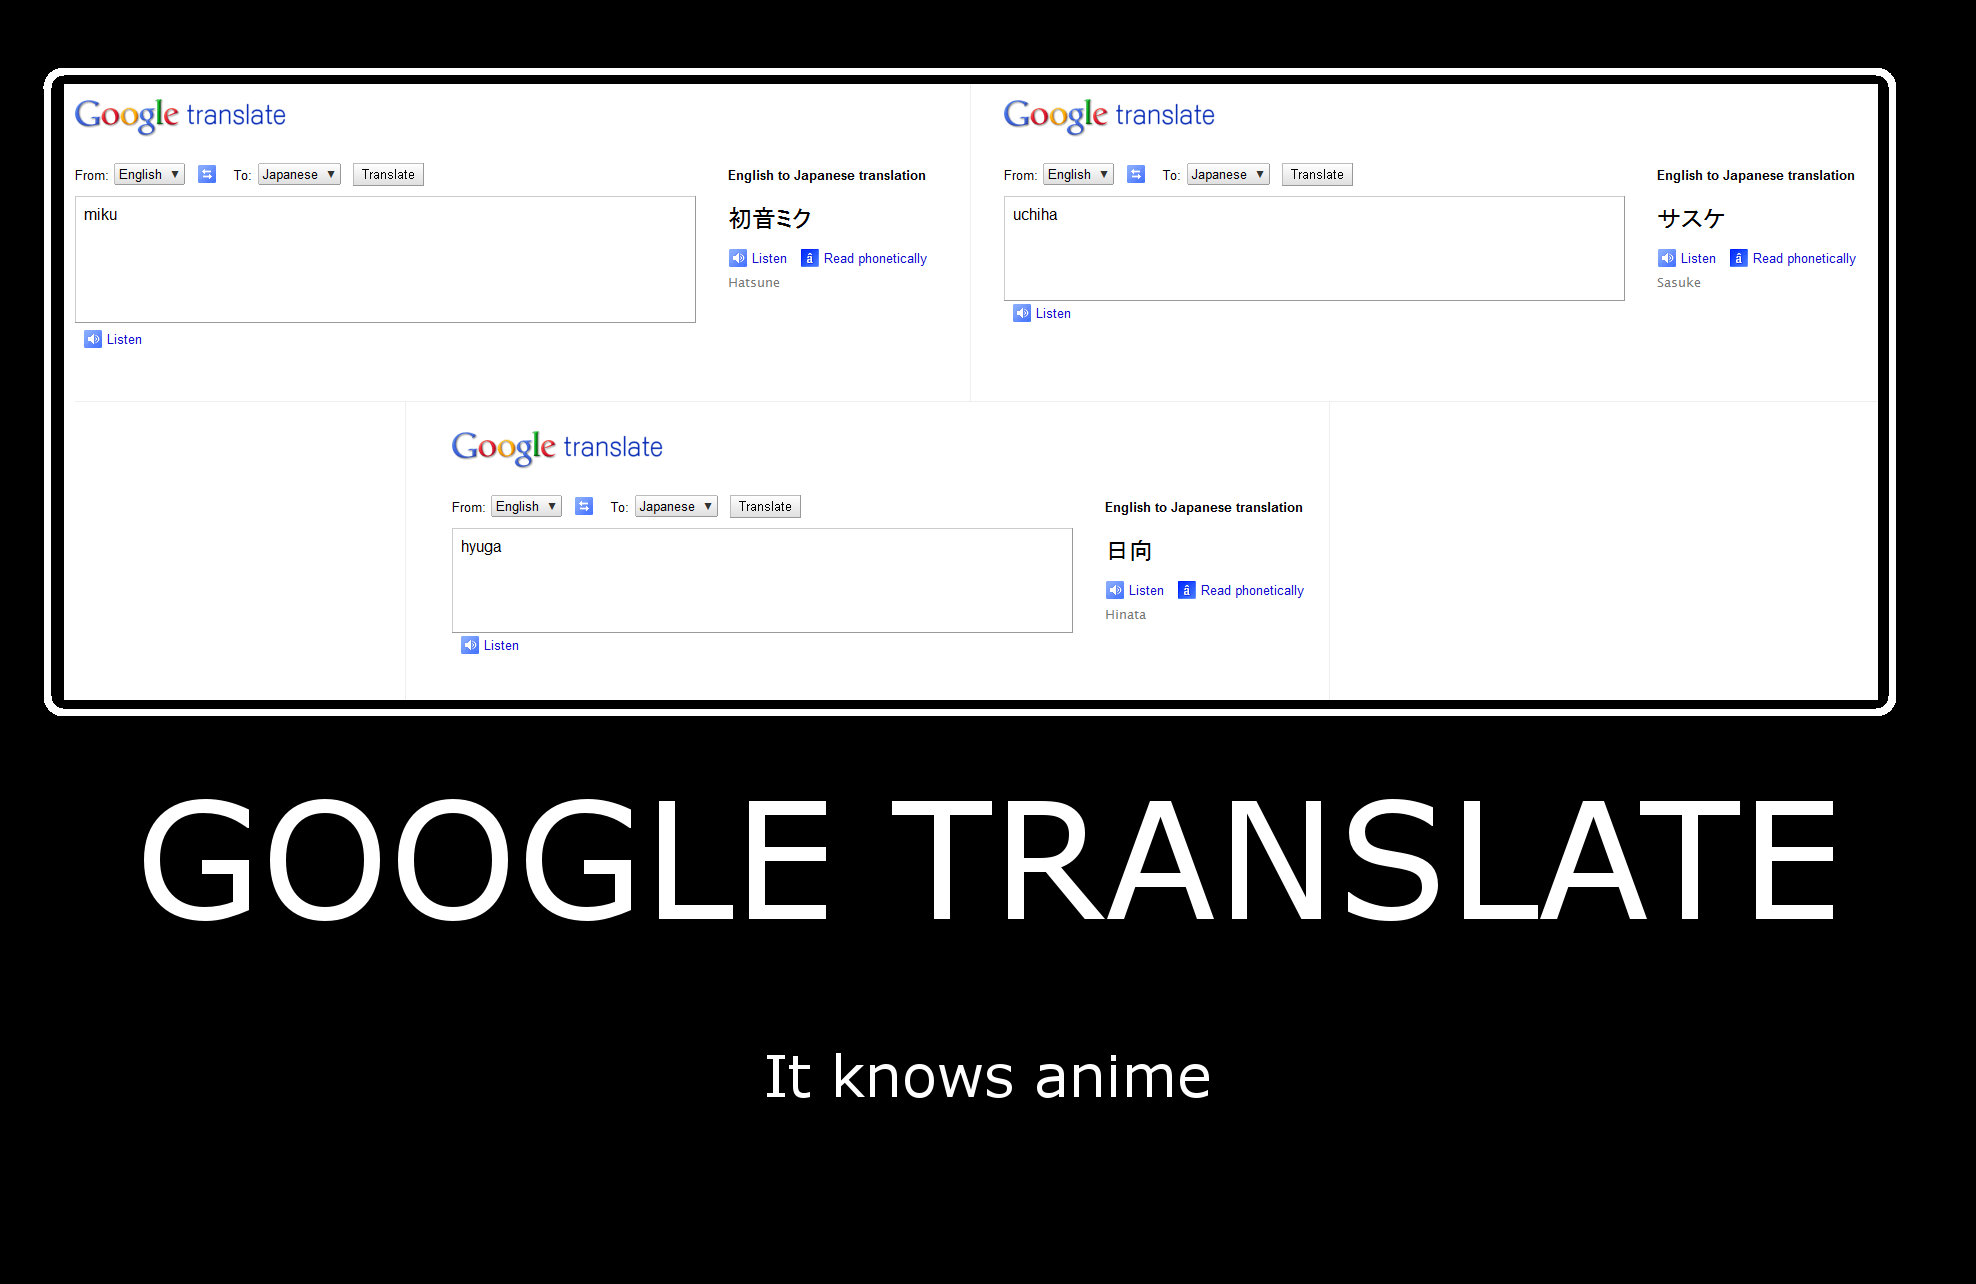 Google переведи на английский. Google переводчик. Приколы с гугл переводчиком. Мемы про гугл переводчик. Перлы гугл Переводчика.